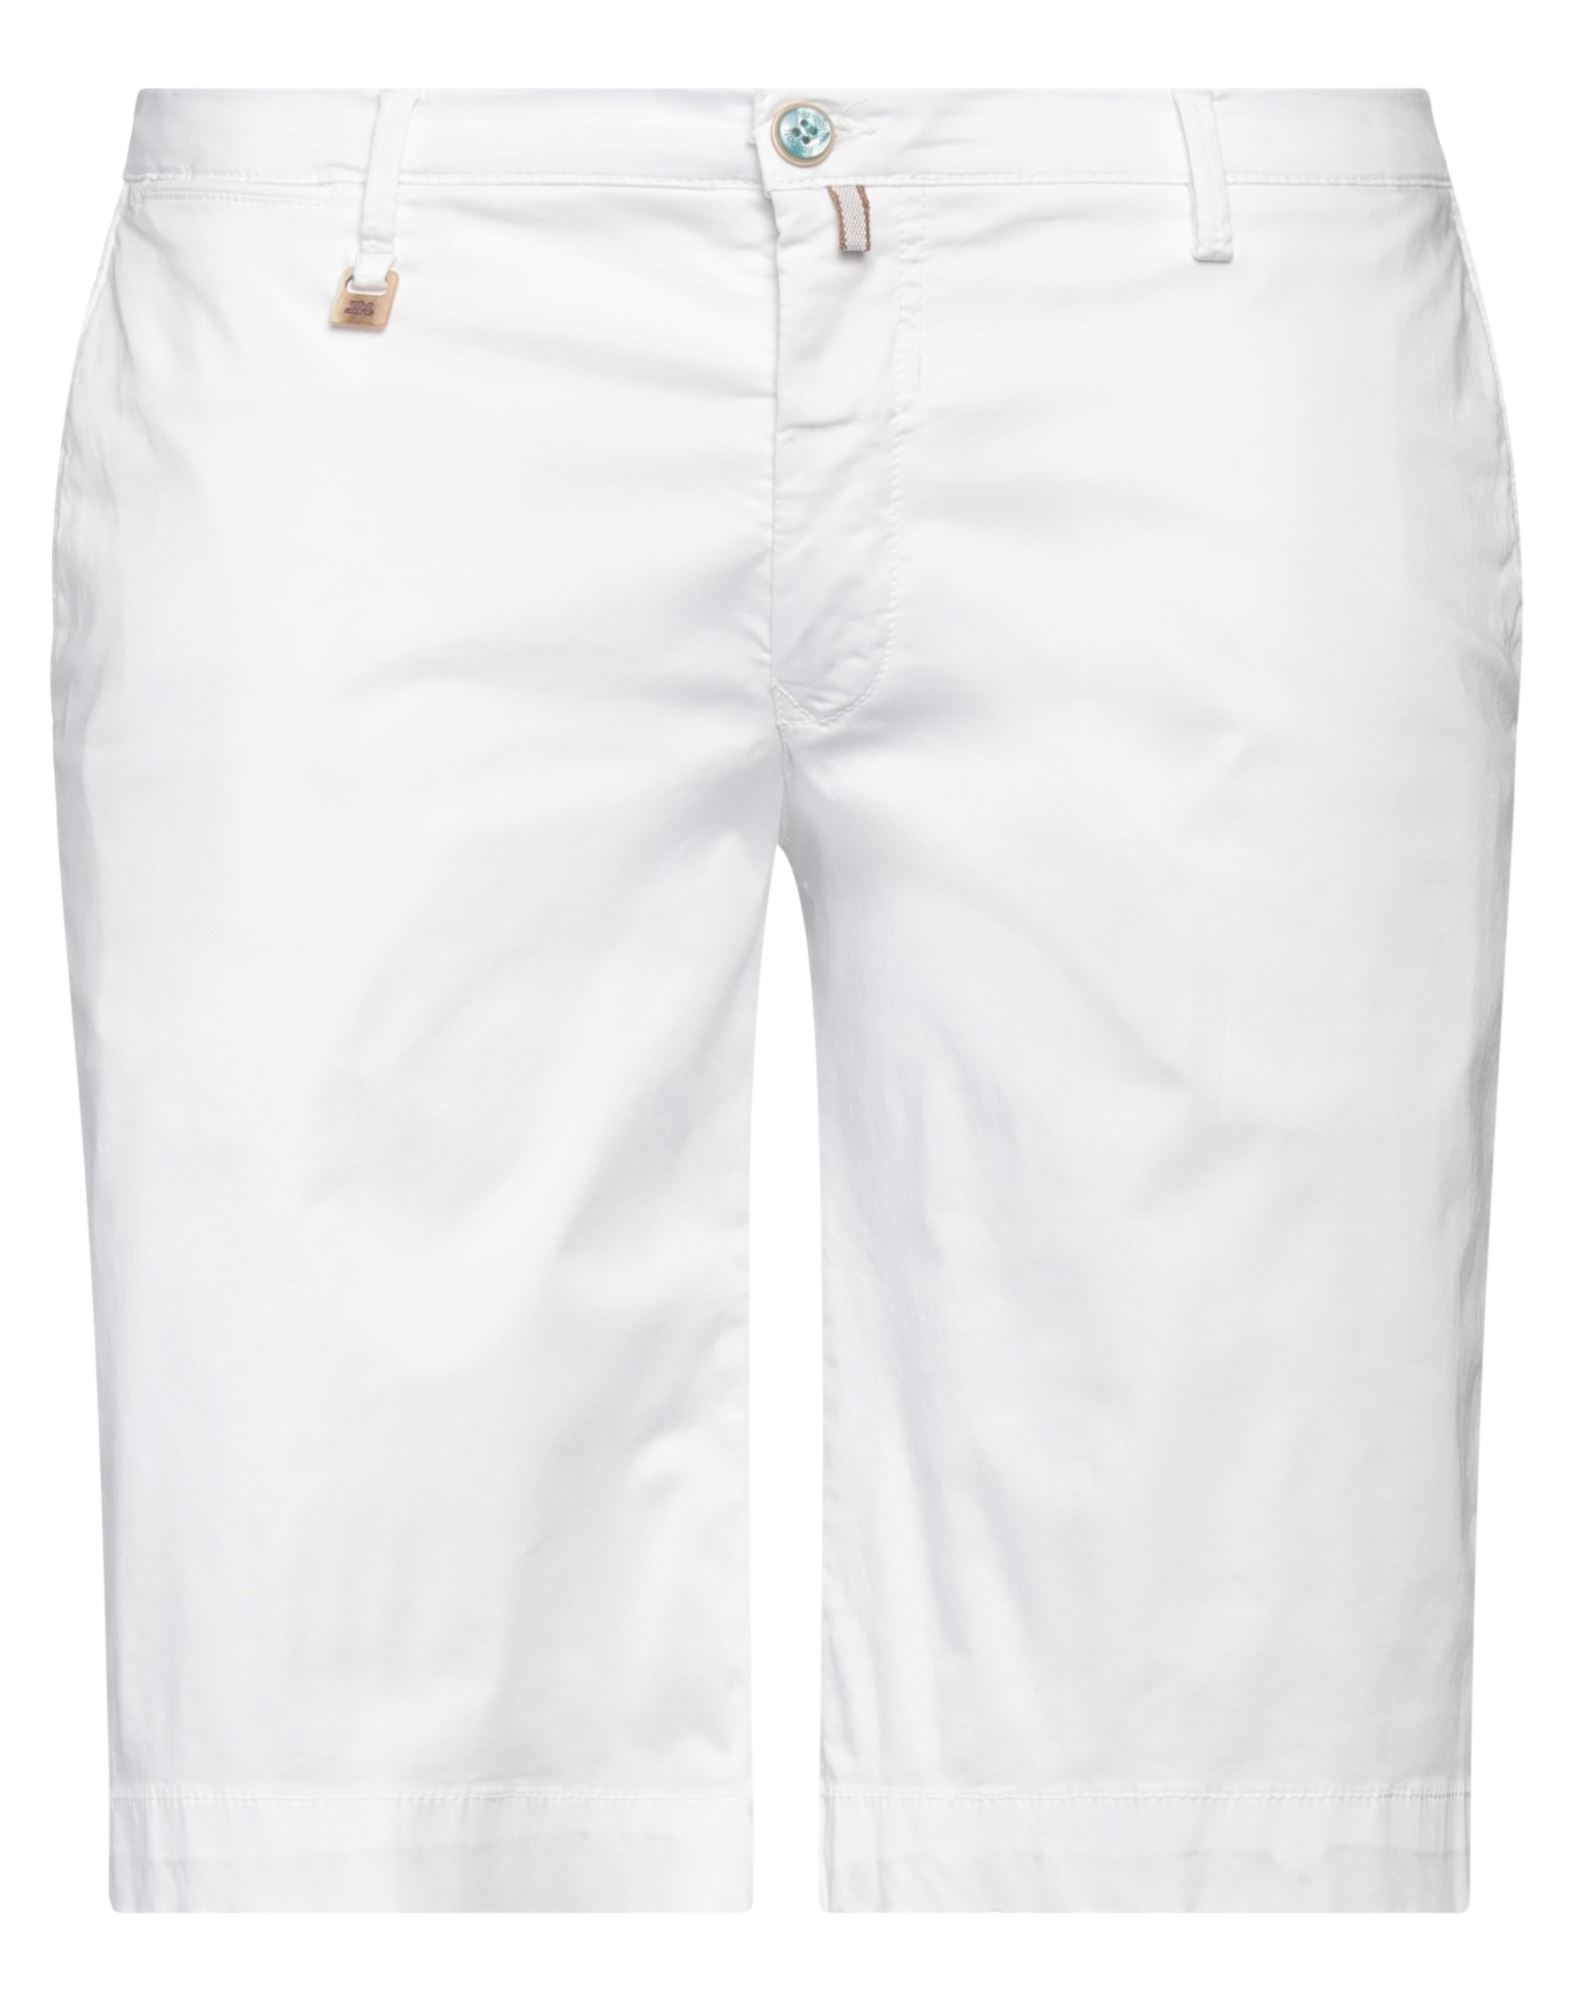 Barbati Shorts & Bermuda Shorts In White